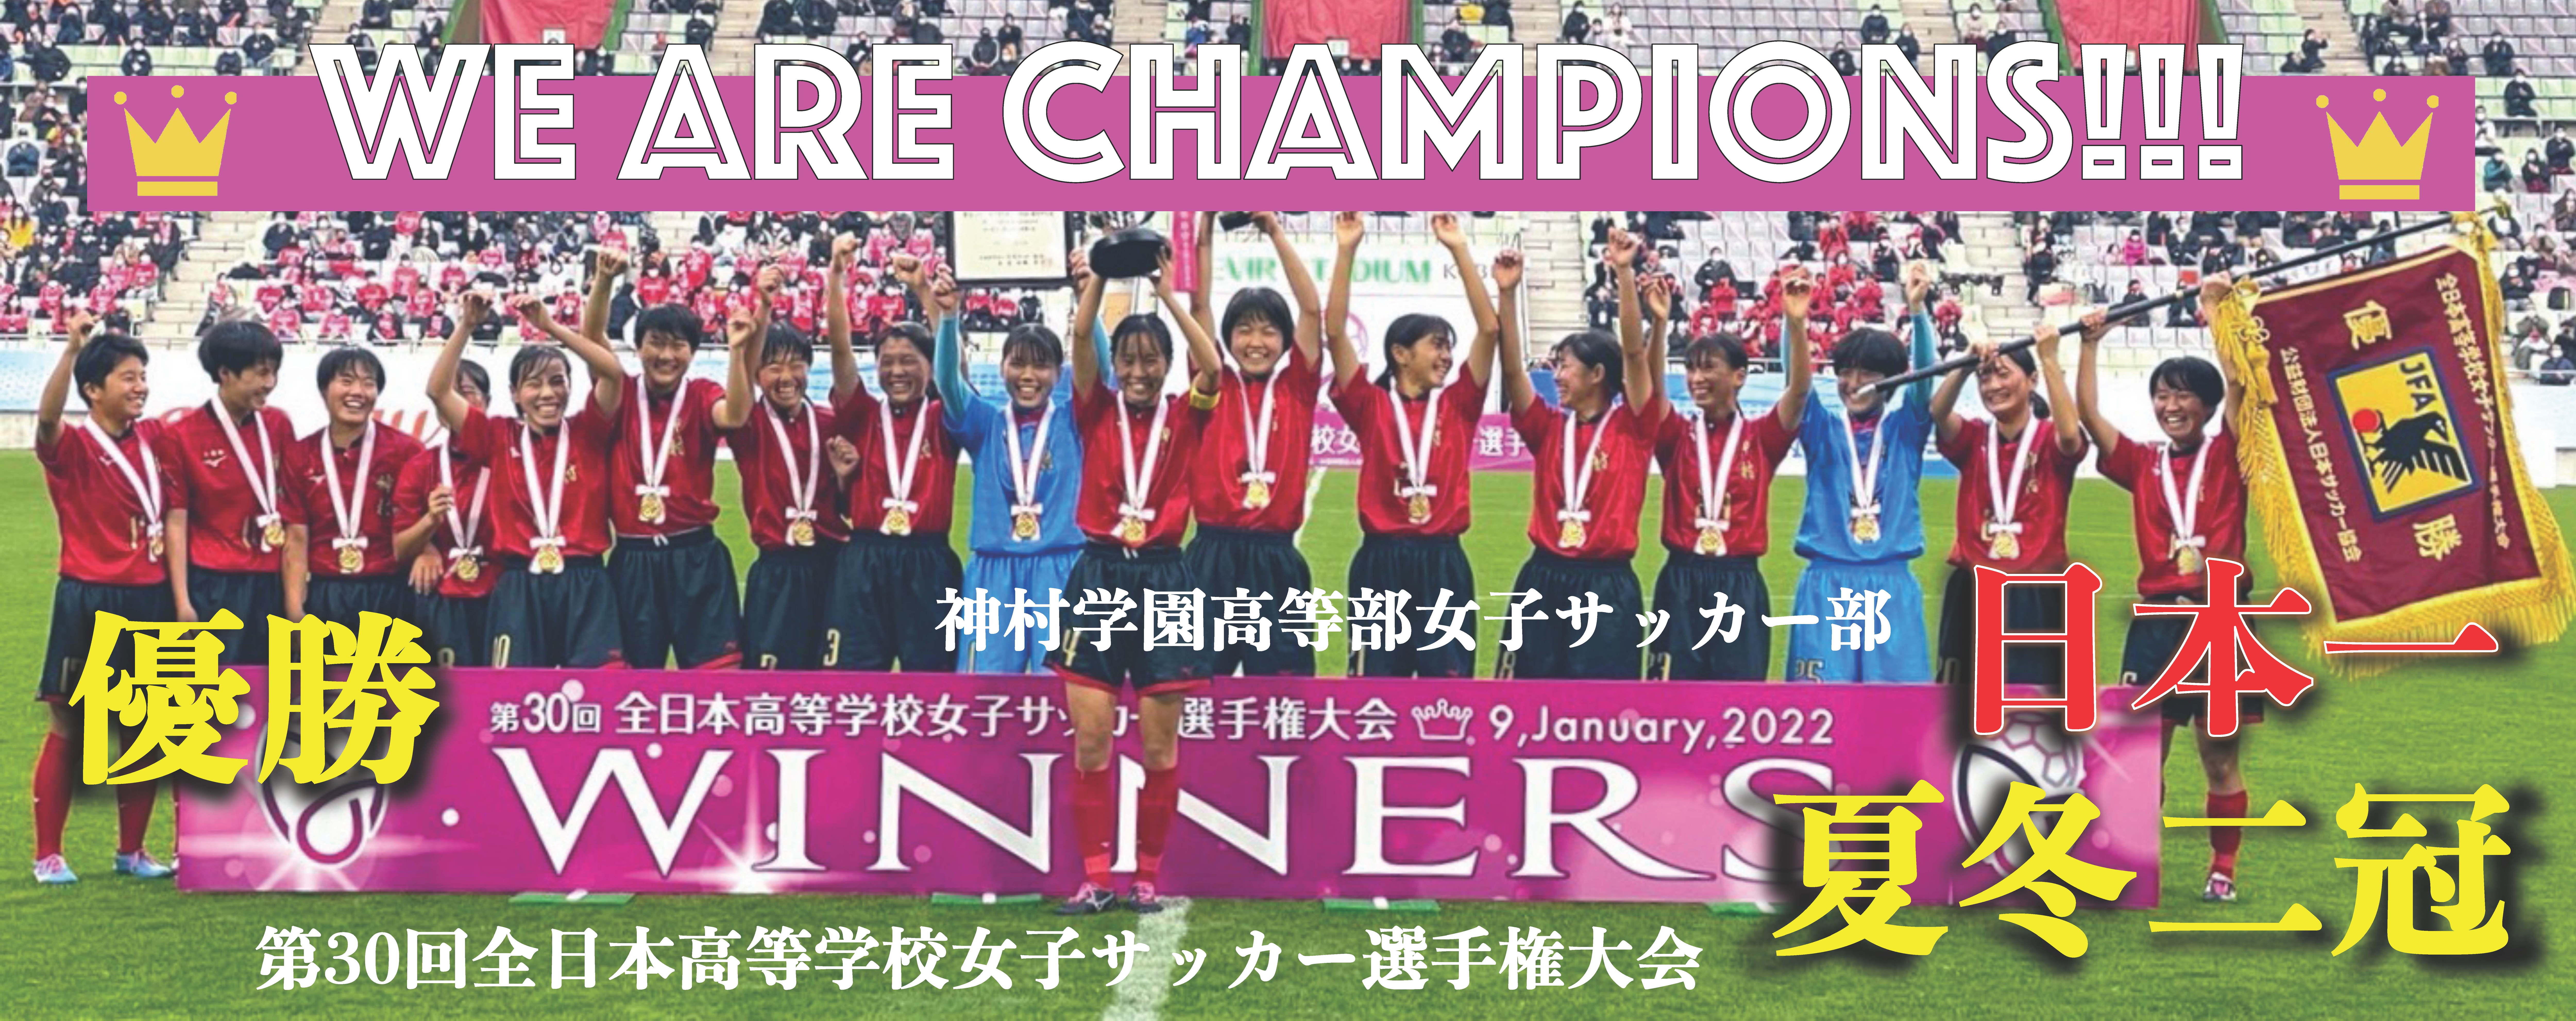 優勝おめでとう 神村学園高等部女子サッカー部